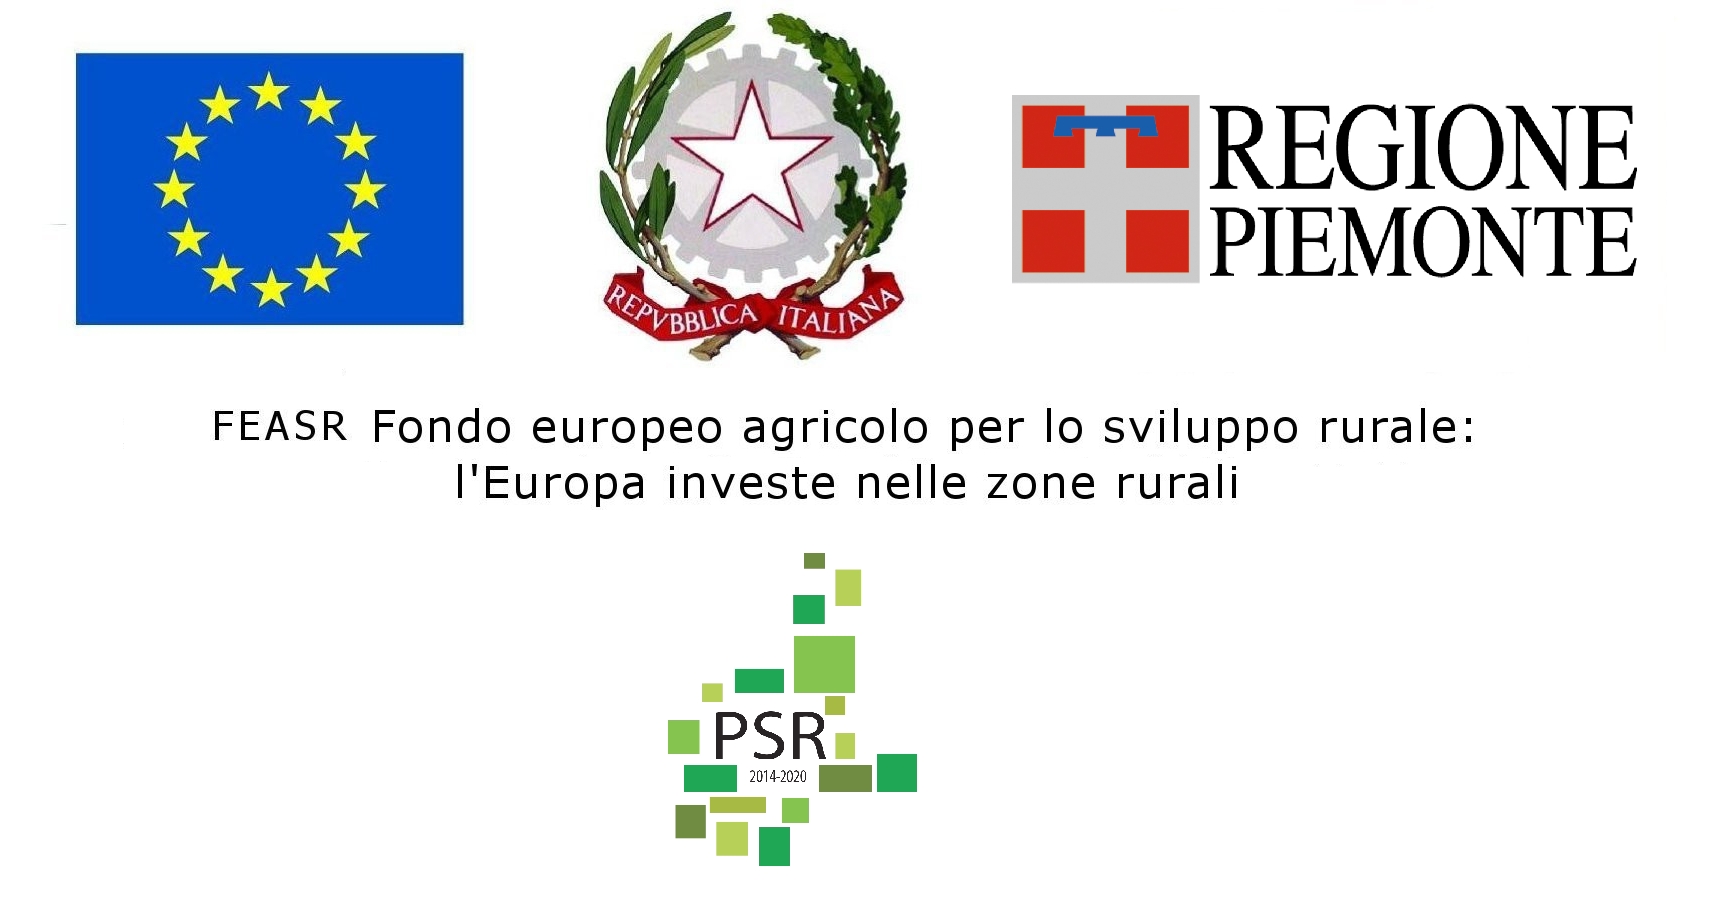 PSR (Programma di Sviluppo Rurale)